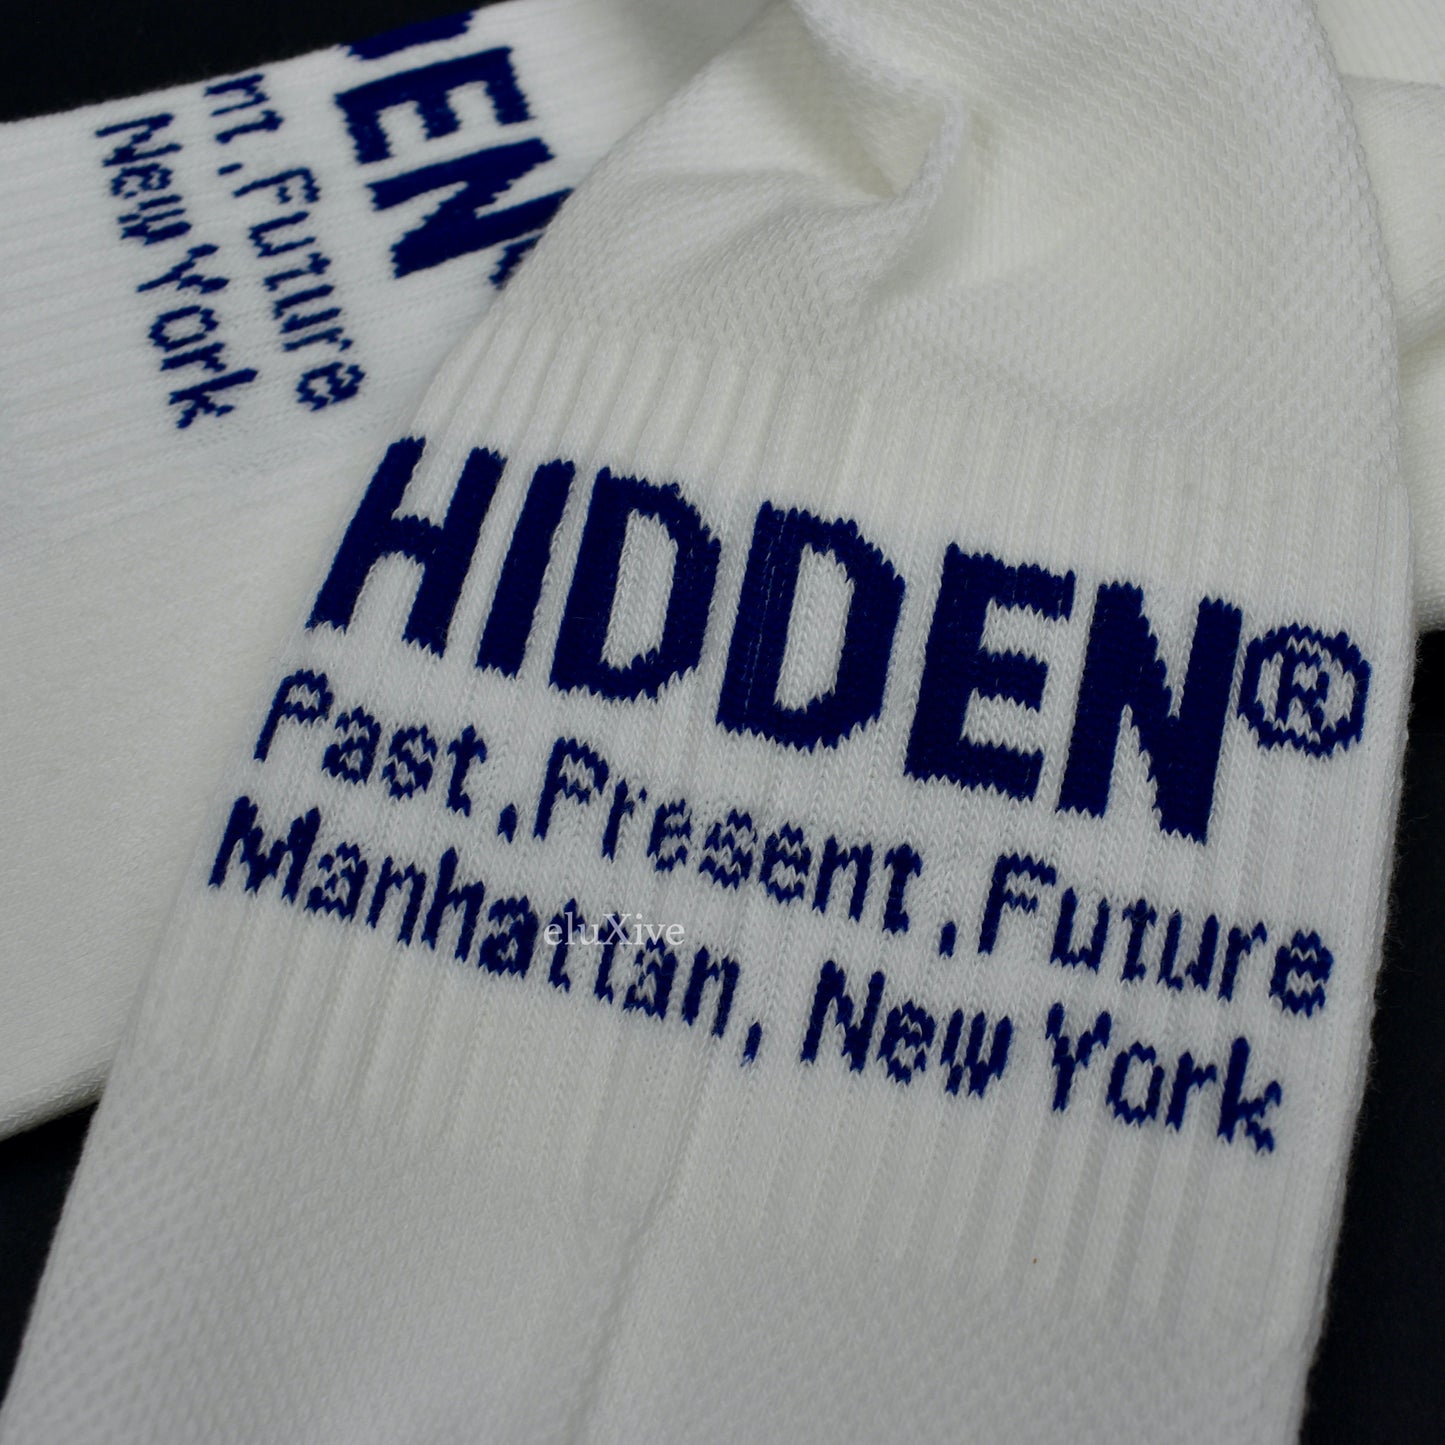 Hidden NY x Needles - Logo Knit Socks (White)